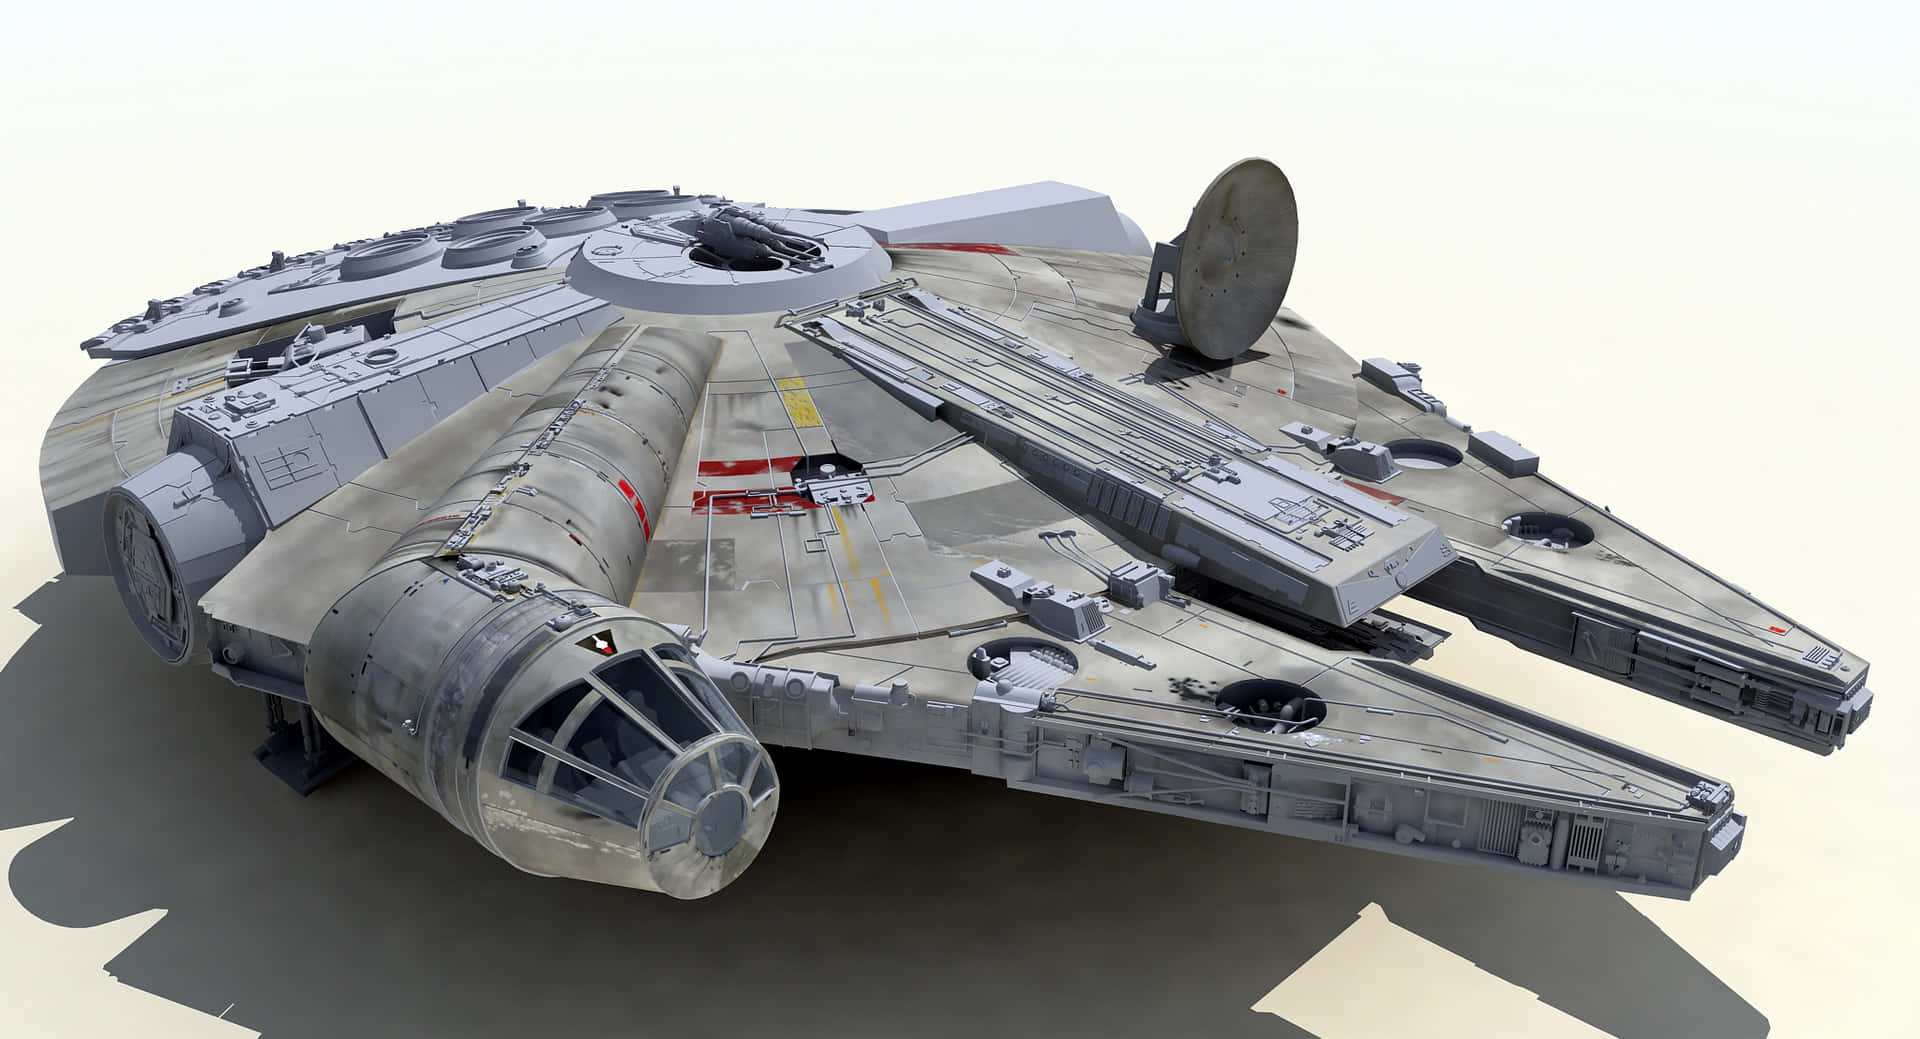 Den ikoniske Millennium Falcon fra Star Wars-universet vises her, udskrevet i strålende teknikfårhed. Wallpaper